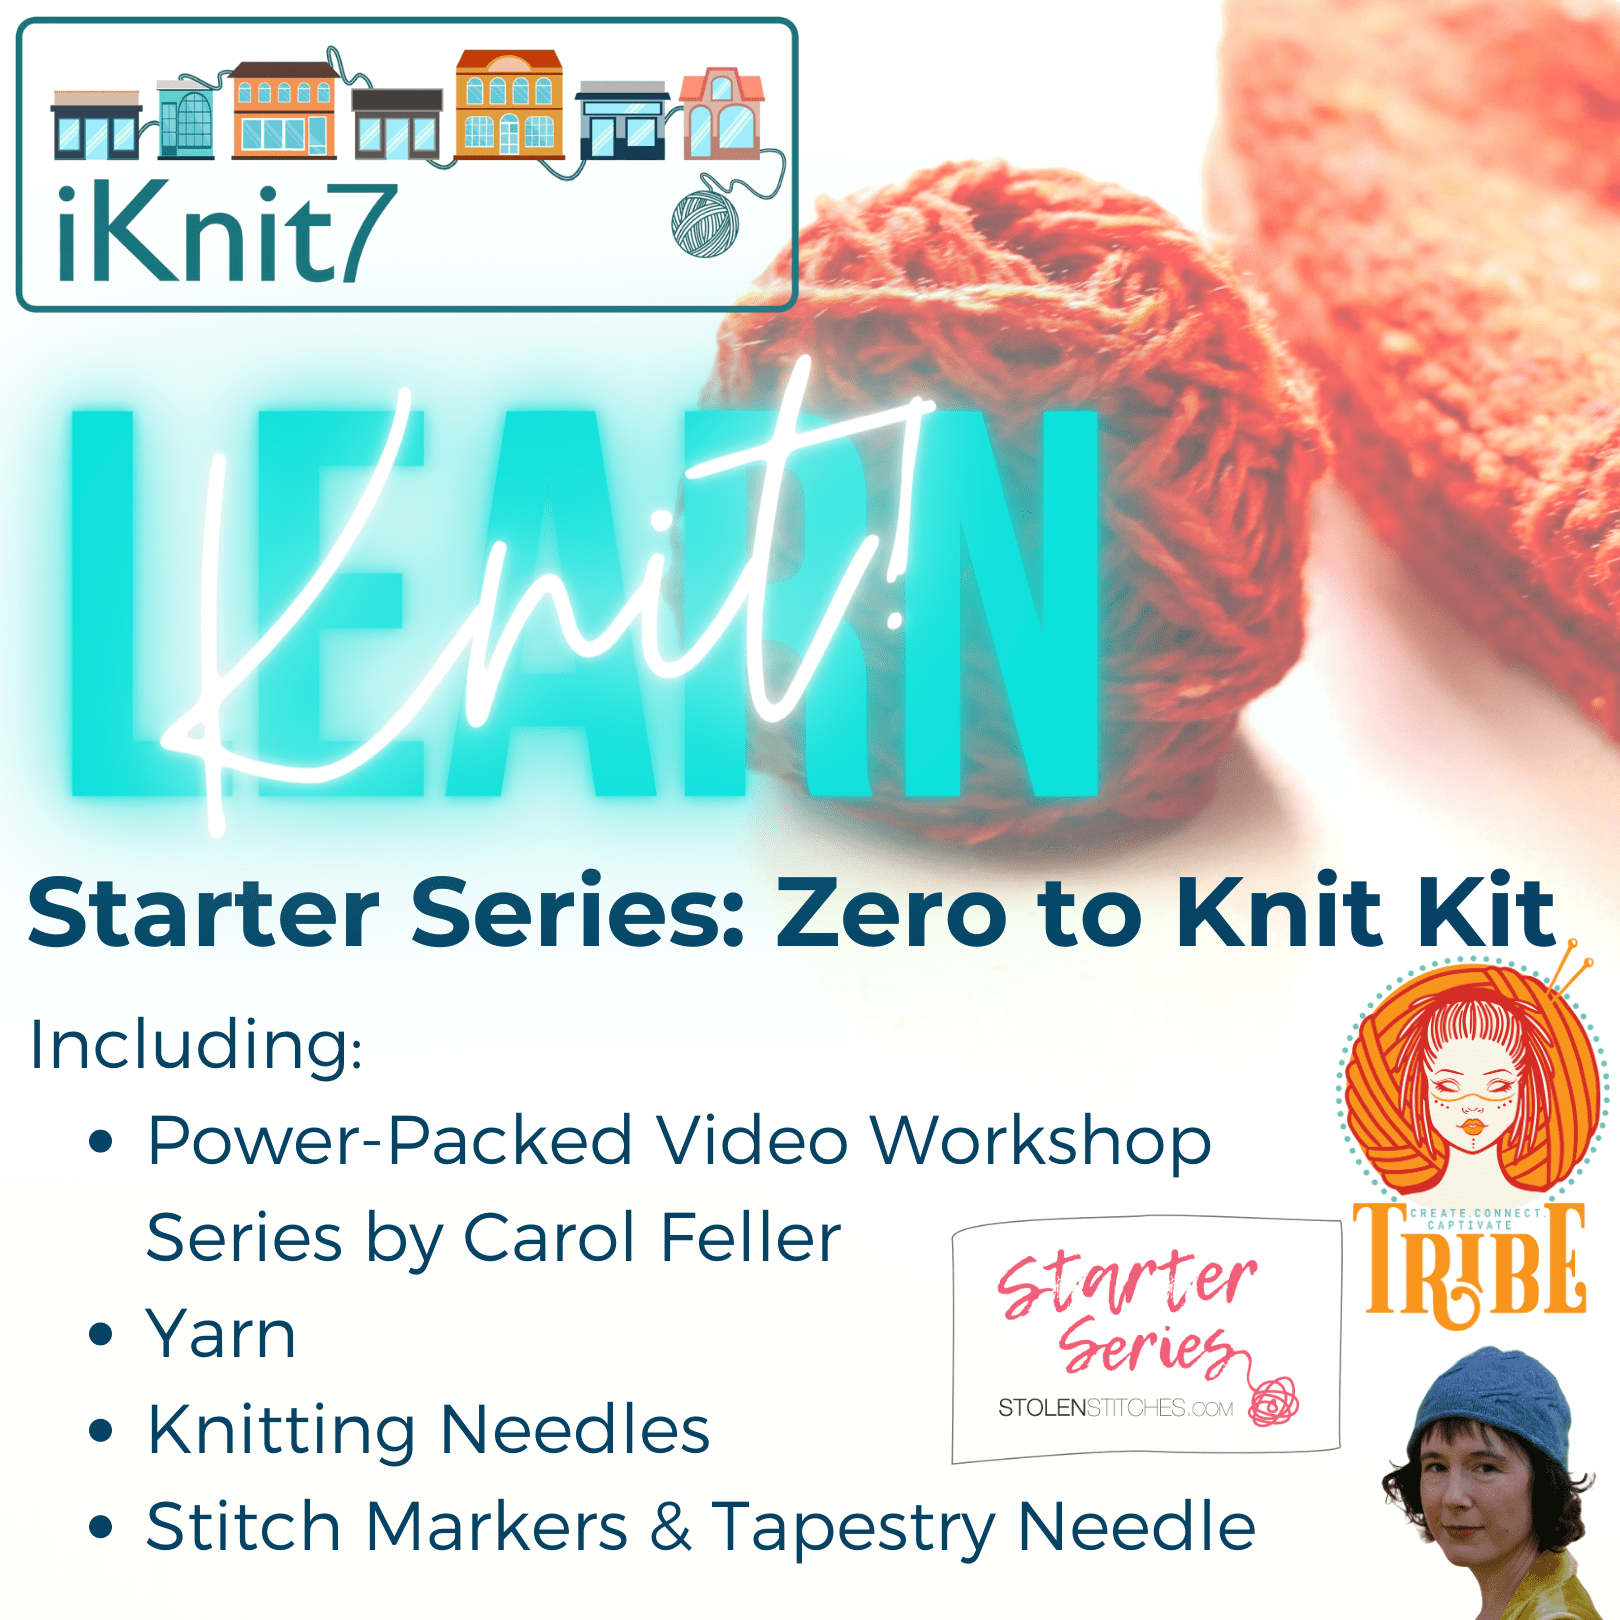 Starter Series: Zero to Knit Kit tribeyarns